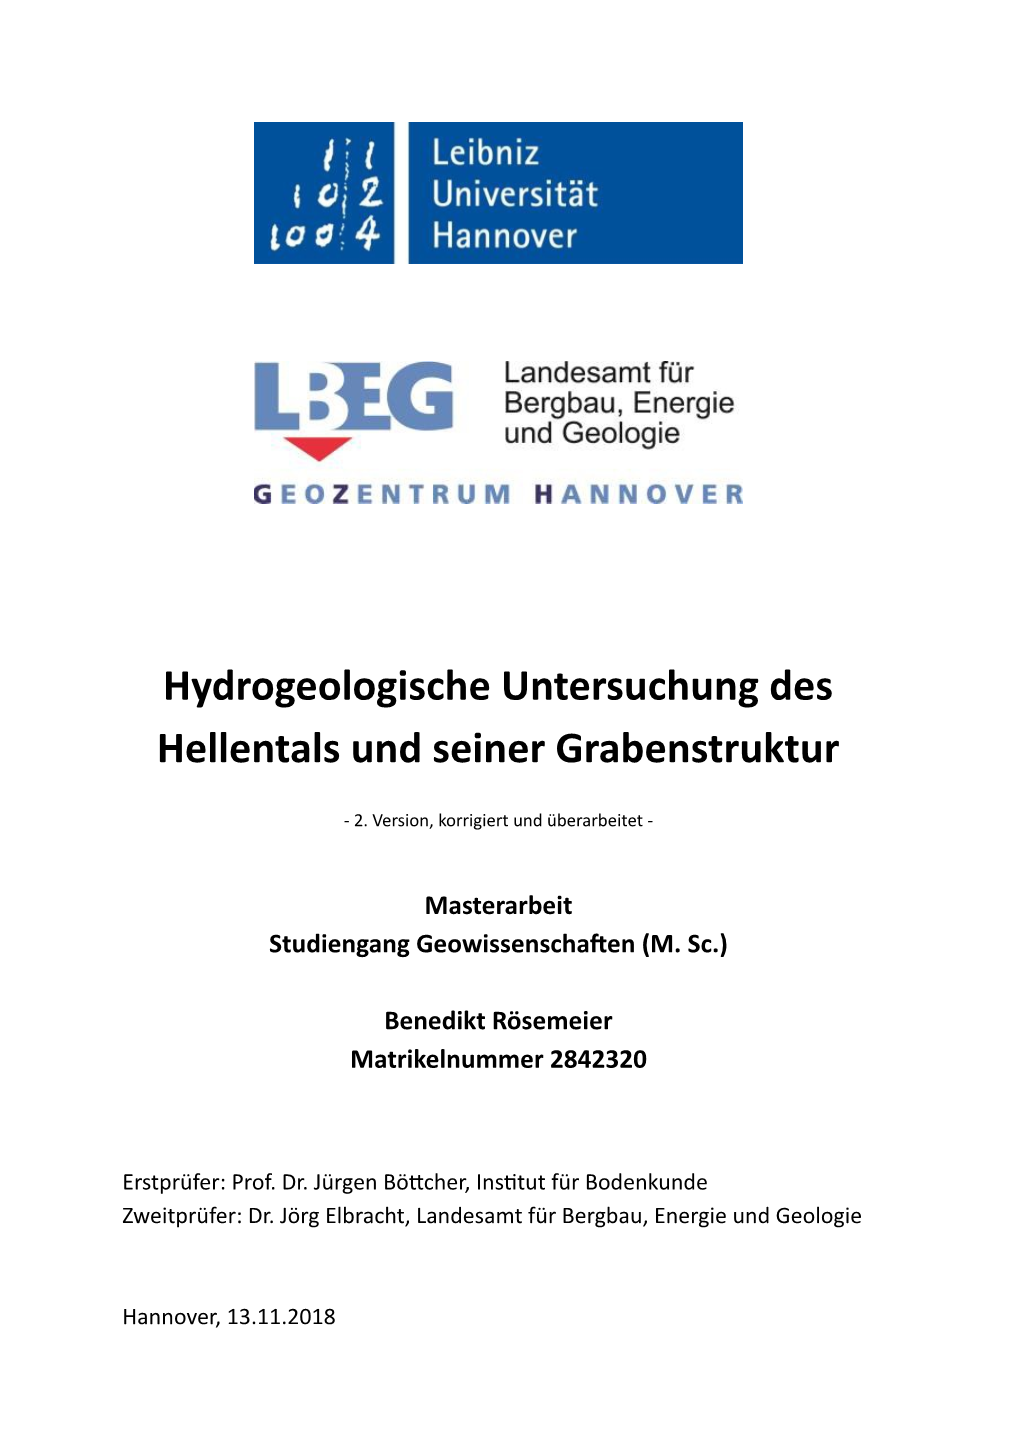 Hydrogeologische Untersuchung Des Hellentals Und Seiner Grabenstruktur